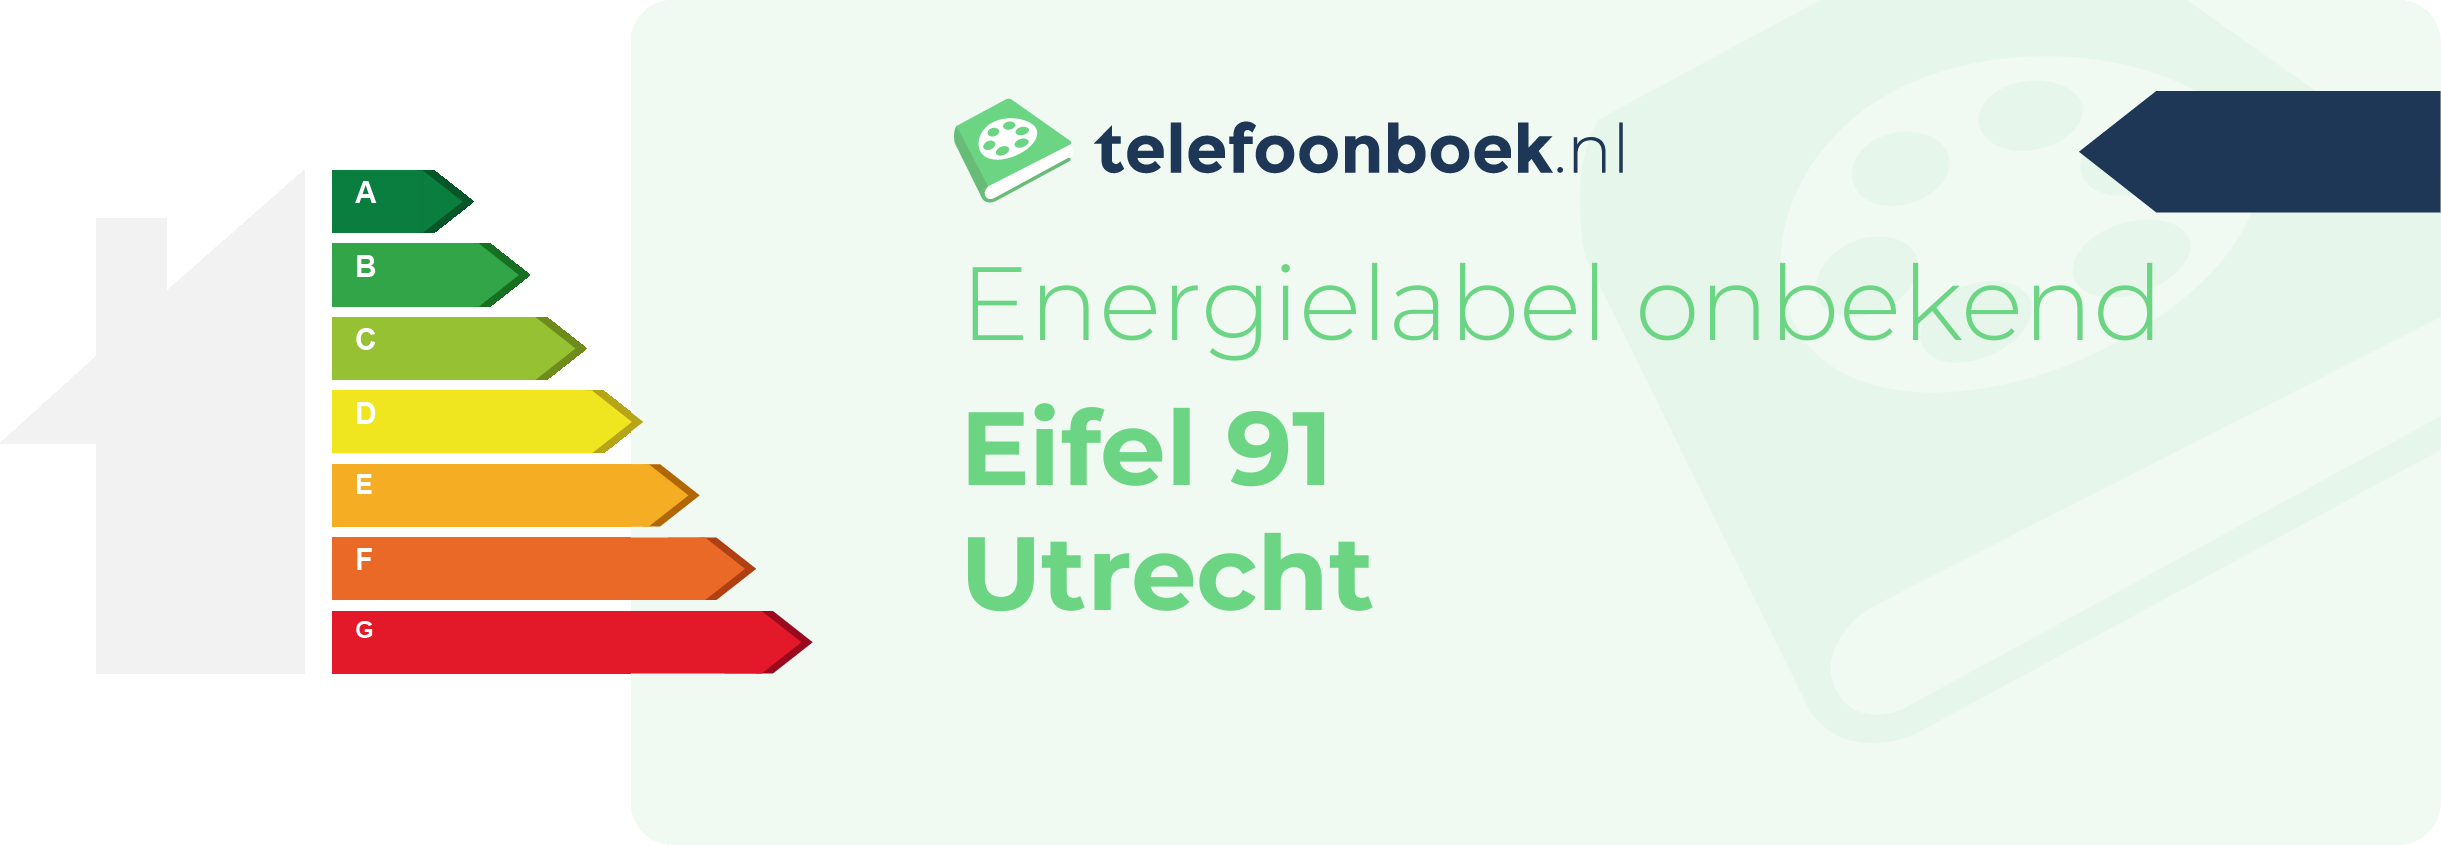 Energielabel Eifel 91 Utrecht